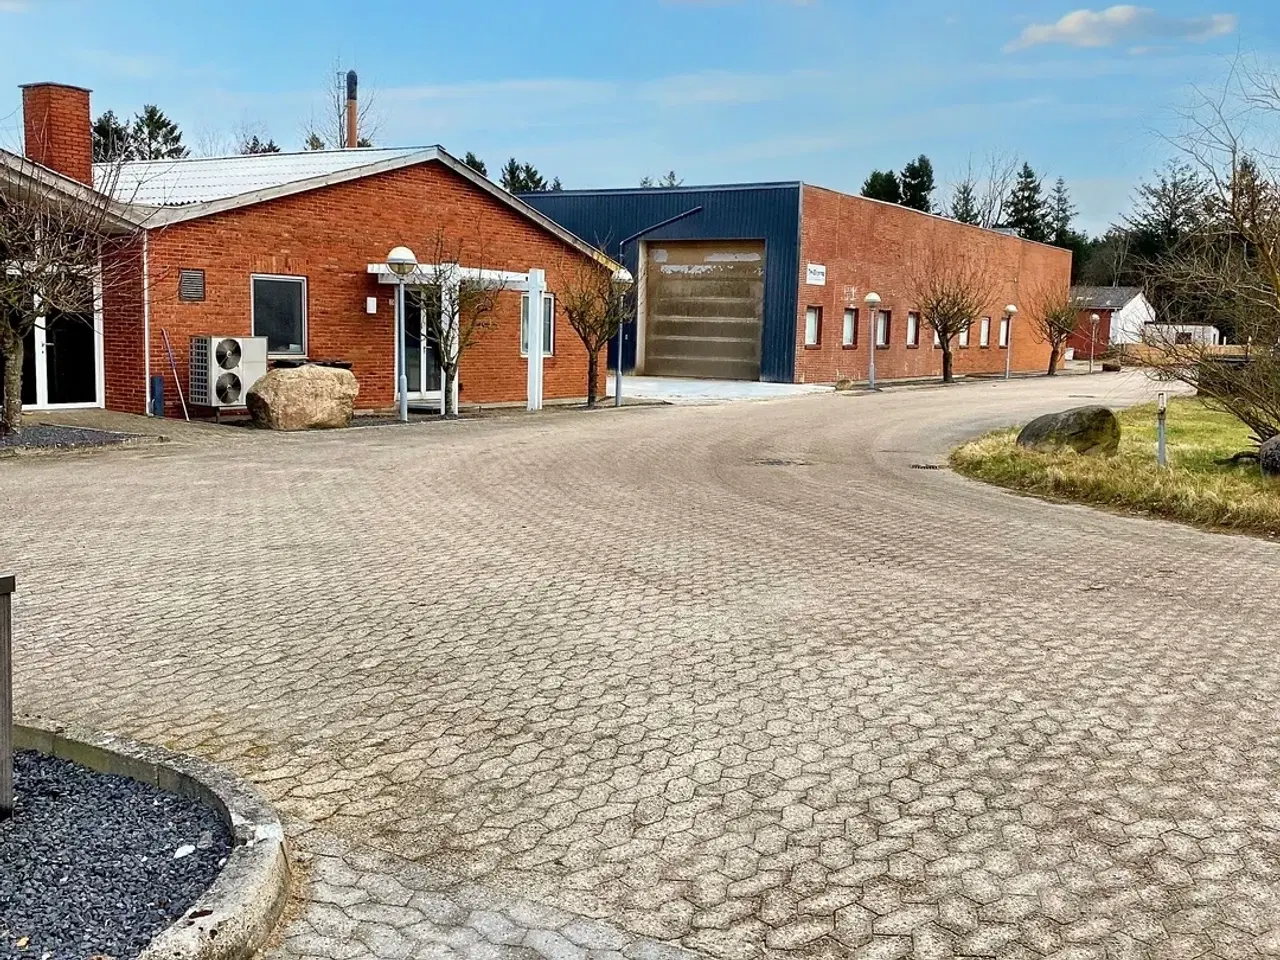 Billede 1 - Produktion/lagerlokaler/værksted med kontor til leje på Alskovvej 23, 7470 Karup J.